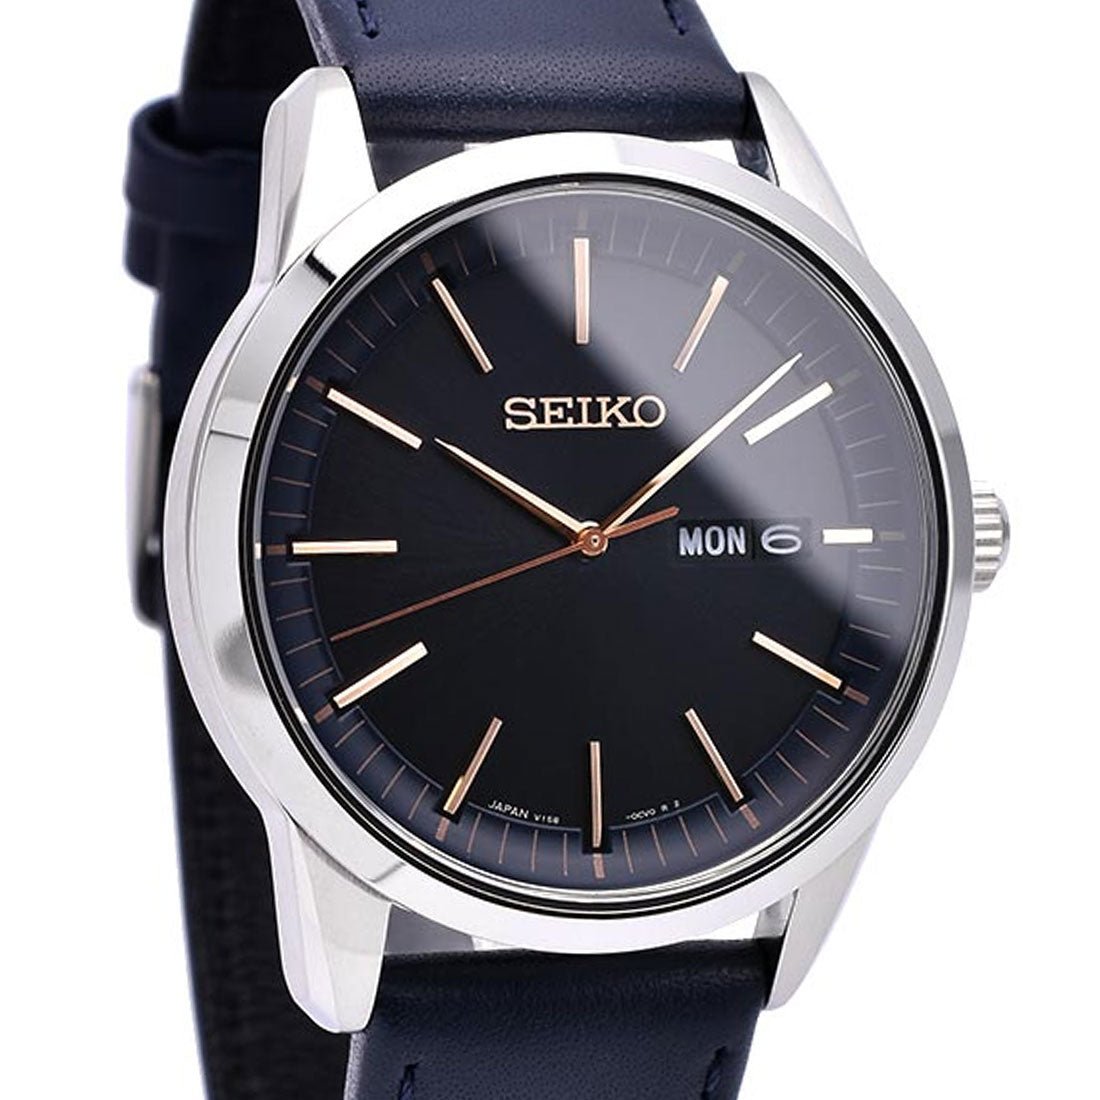 Seiko Selection Solar JDM Watch SBPX129 -Seiko